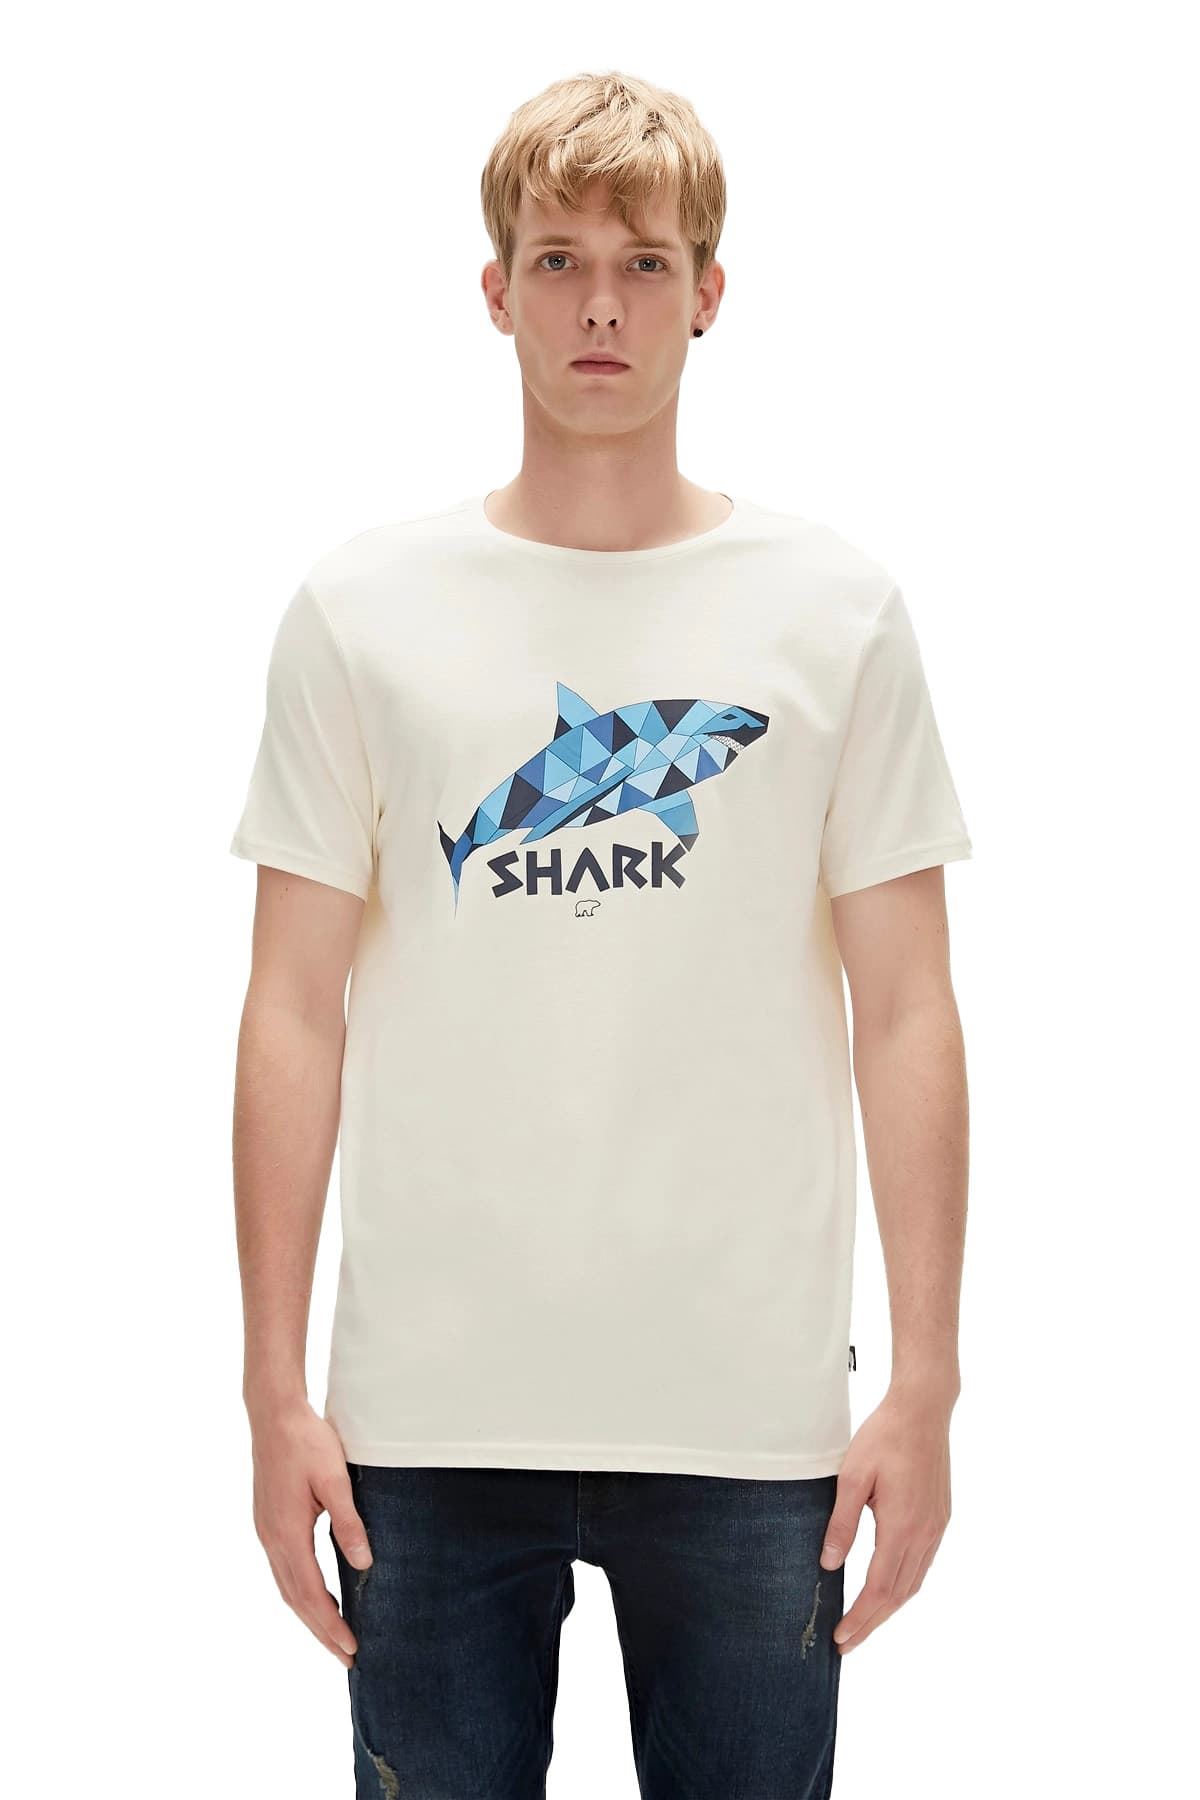 Bad Bear Shark Erkek Beyaz Tişört - 23.01.07.024